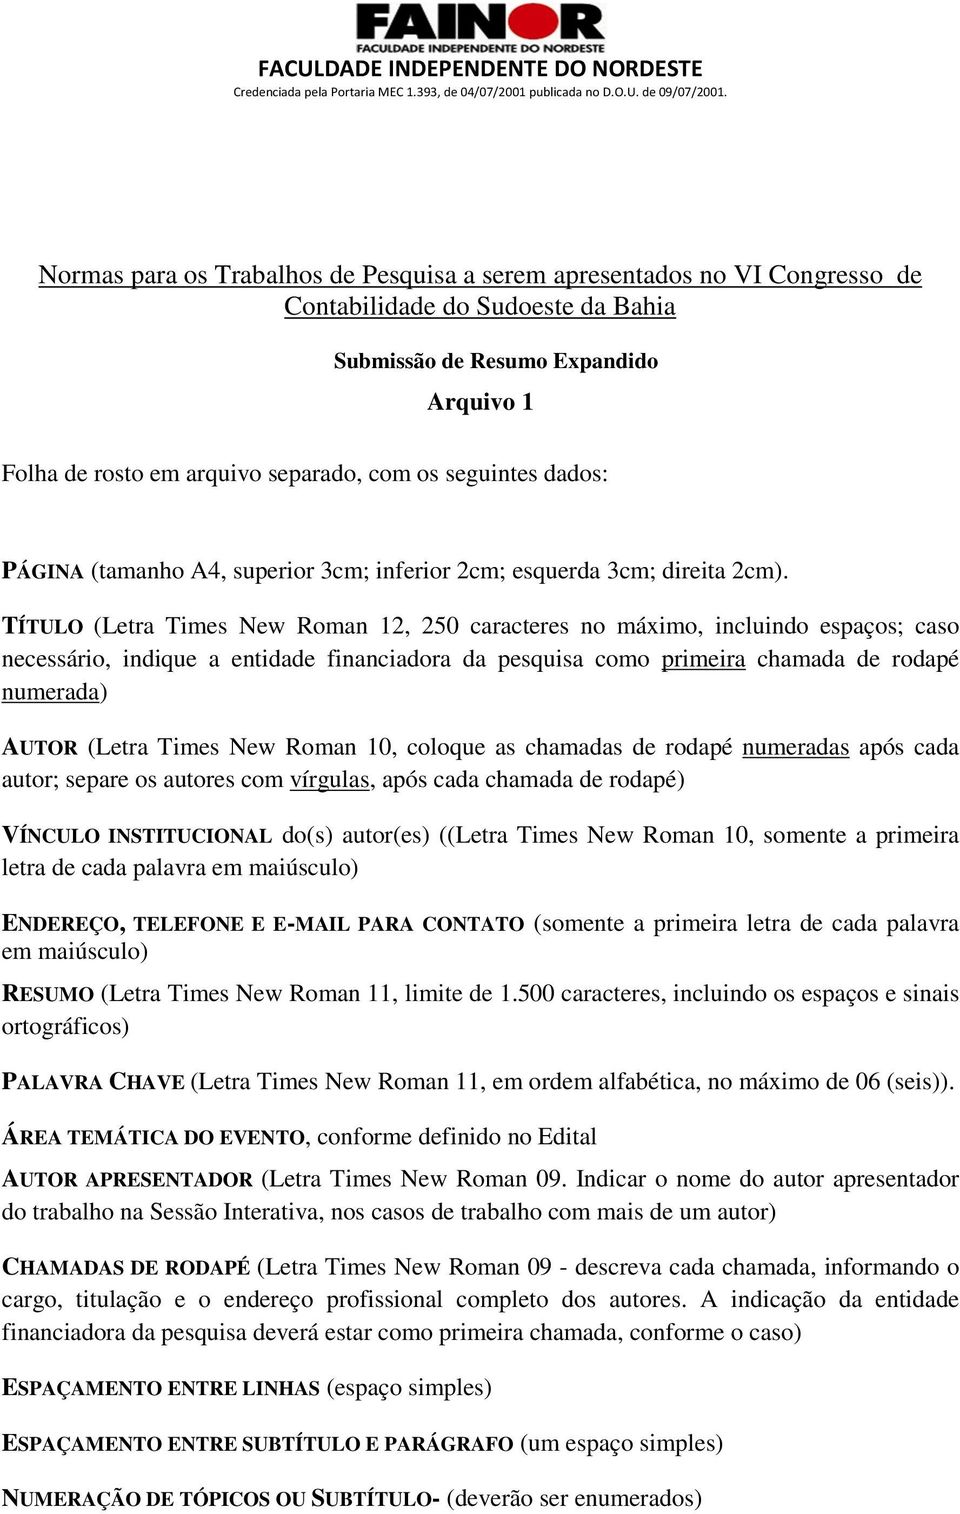 TÍTULO (Letra Times New Roman 12, 250 caracteres no máximo, incluindo espaços; caso necessário, indique a entidade financiadora da pesquisa como primeira chamada de rodapé numerada) AUTOR (Letra